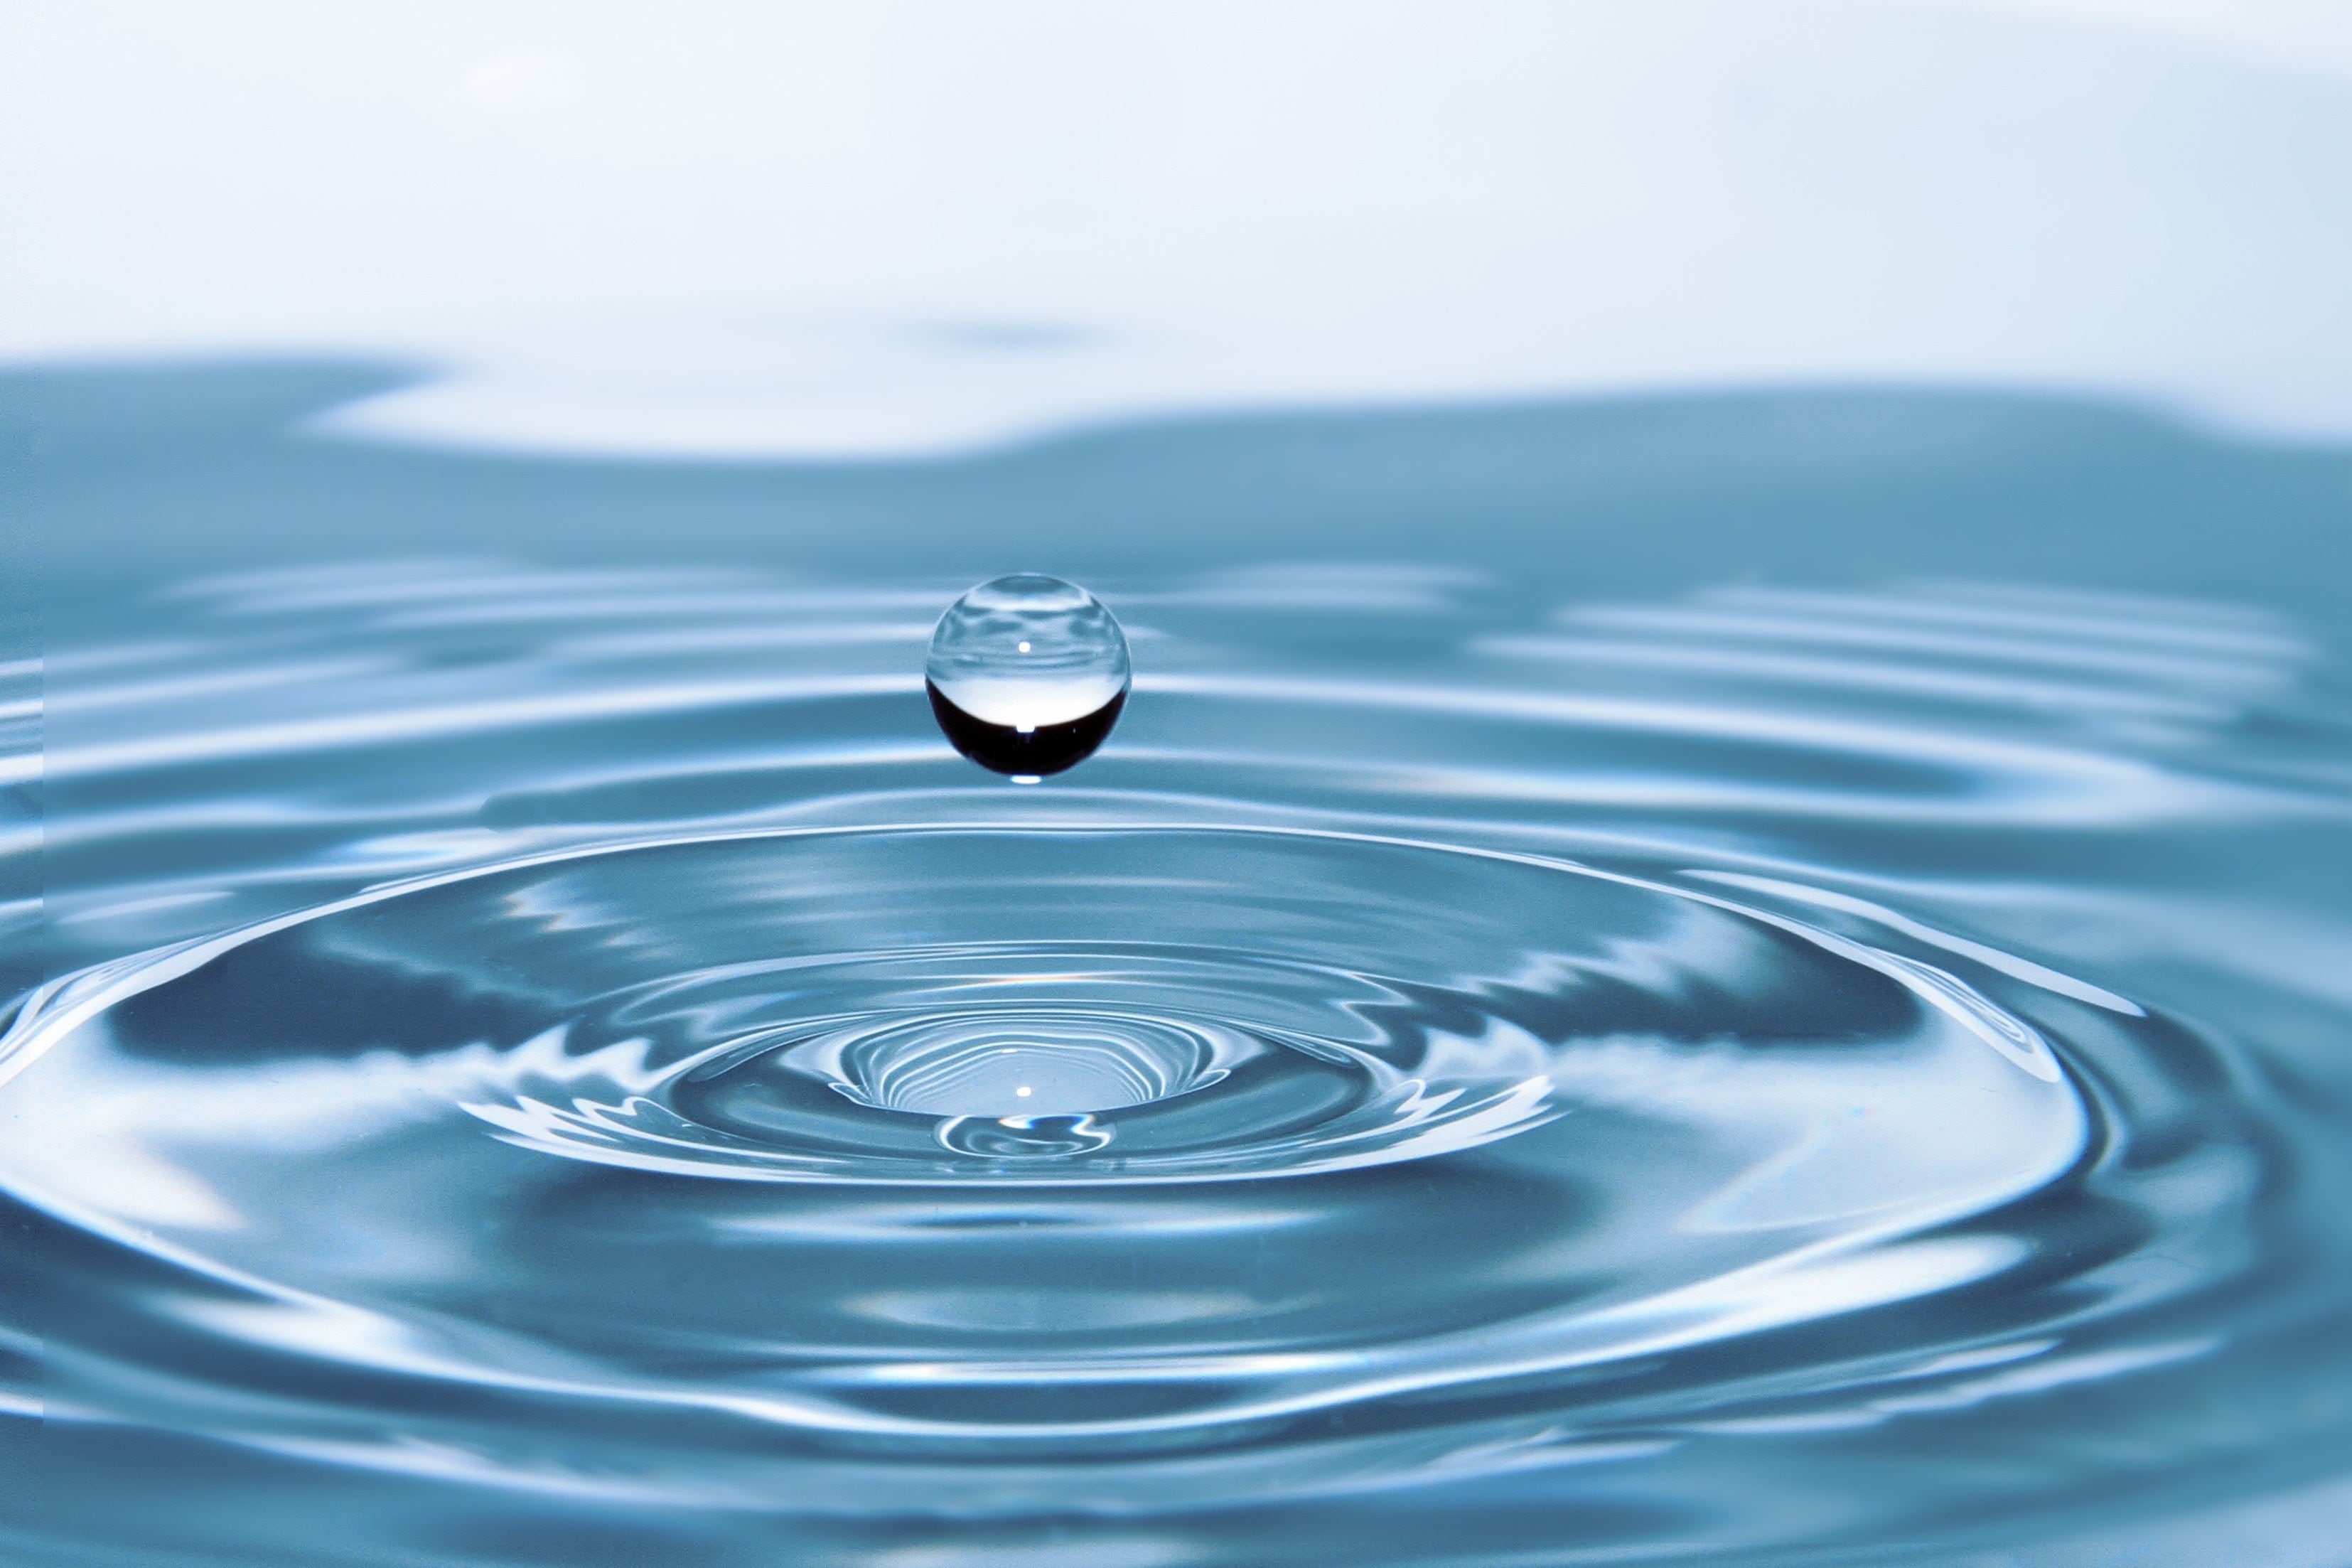 Dépôt du bilan de la Stratégie montréalaise de l'eau 2011-2020 : un pas dans la bonne direction